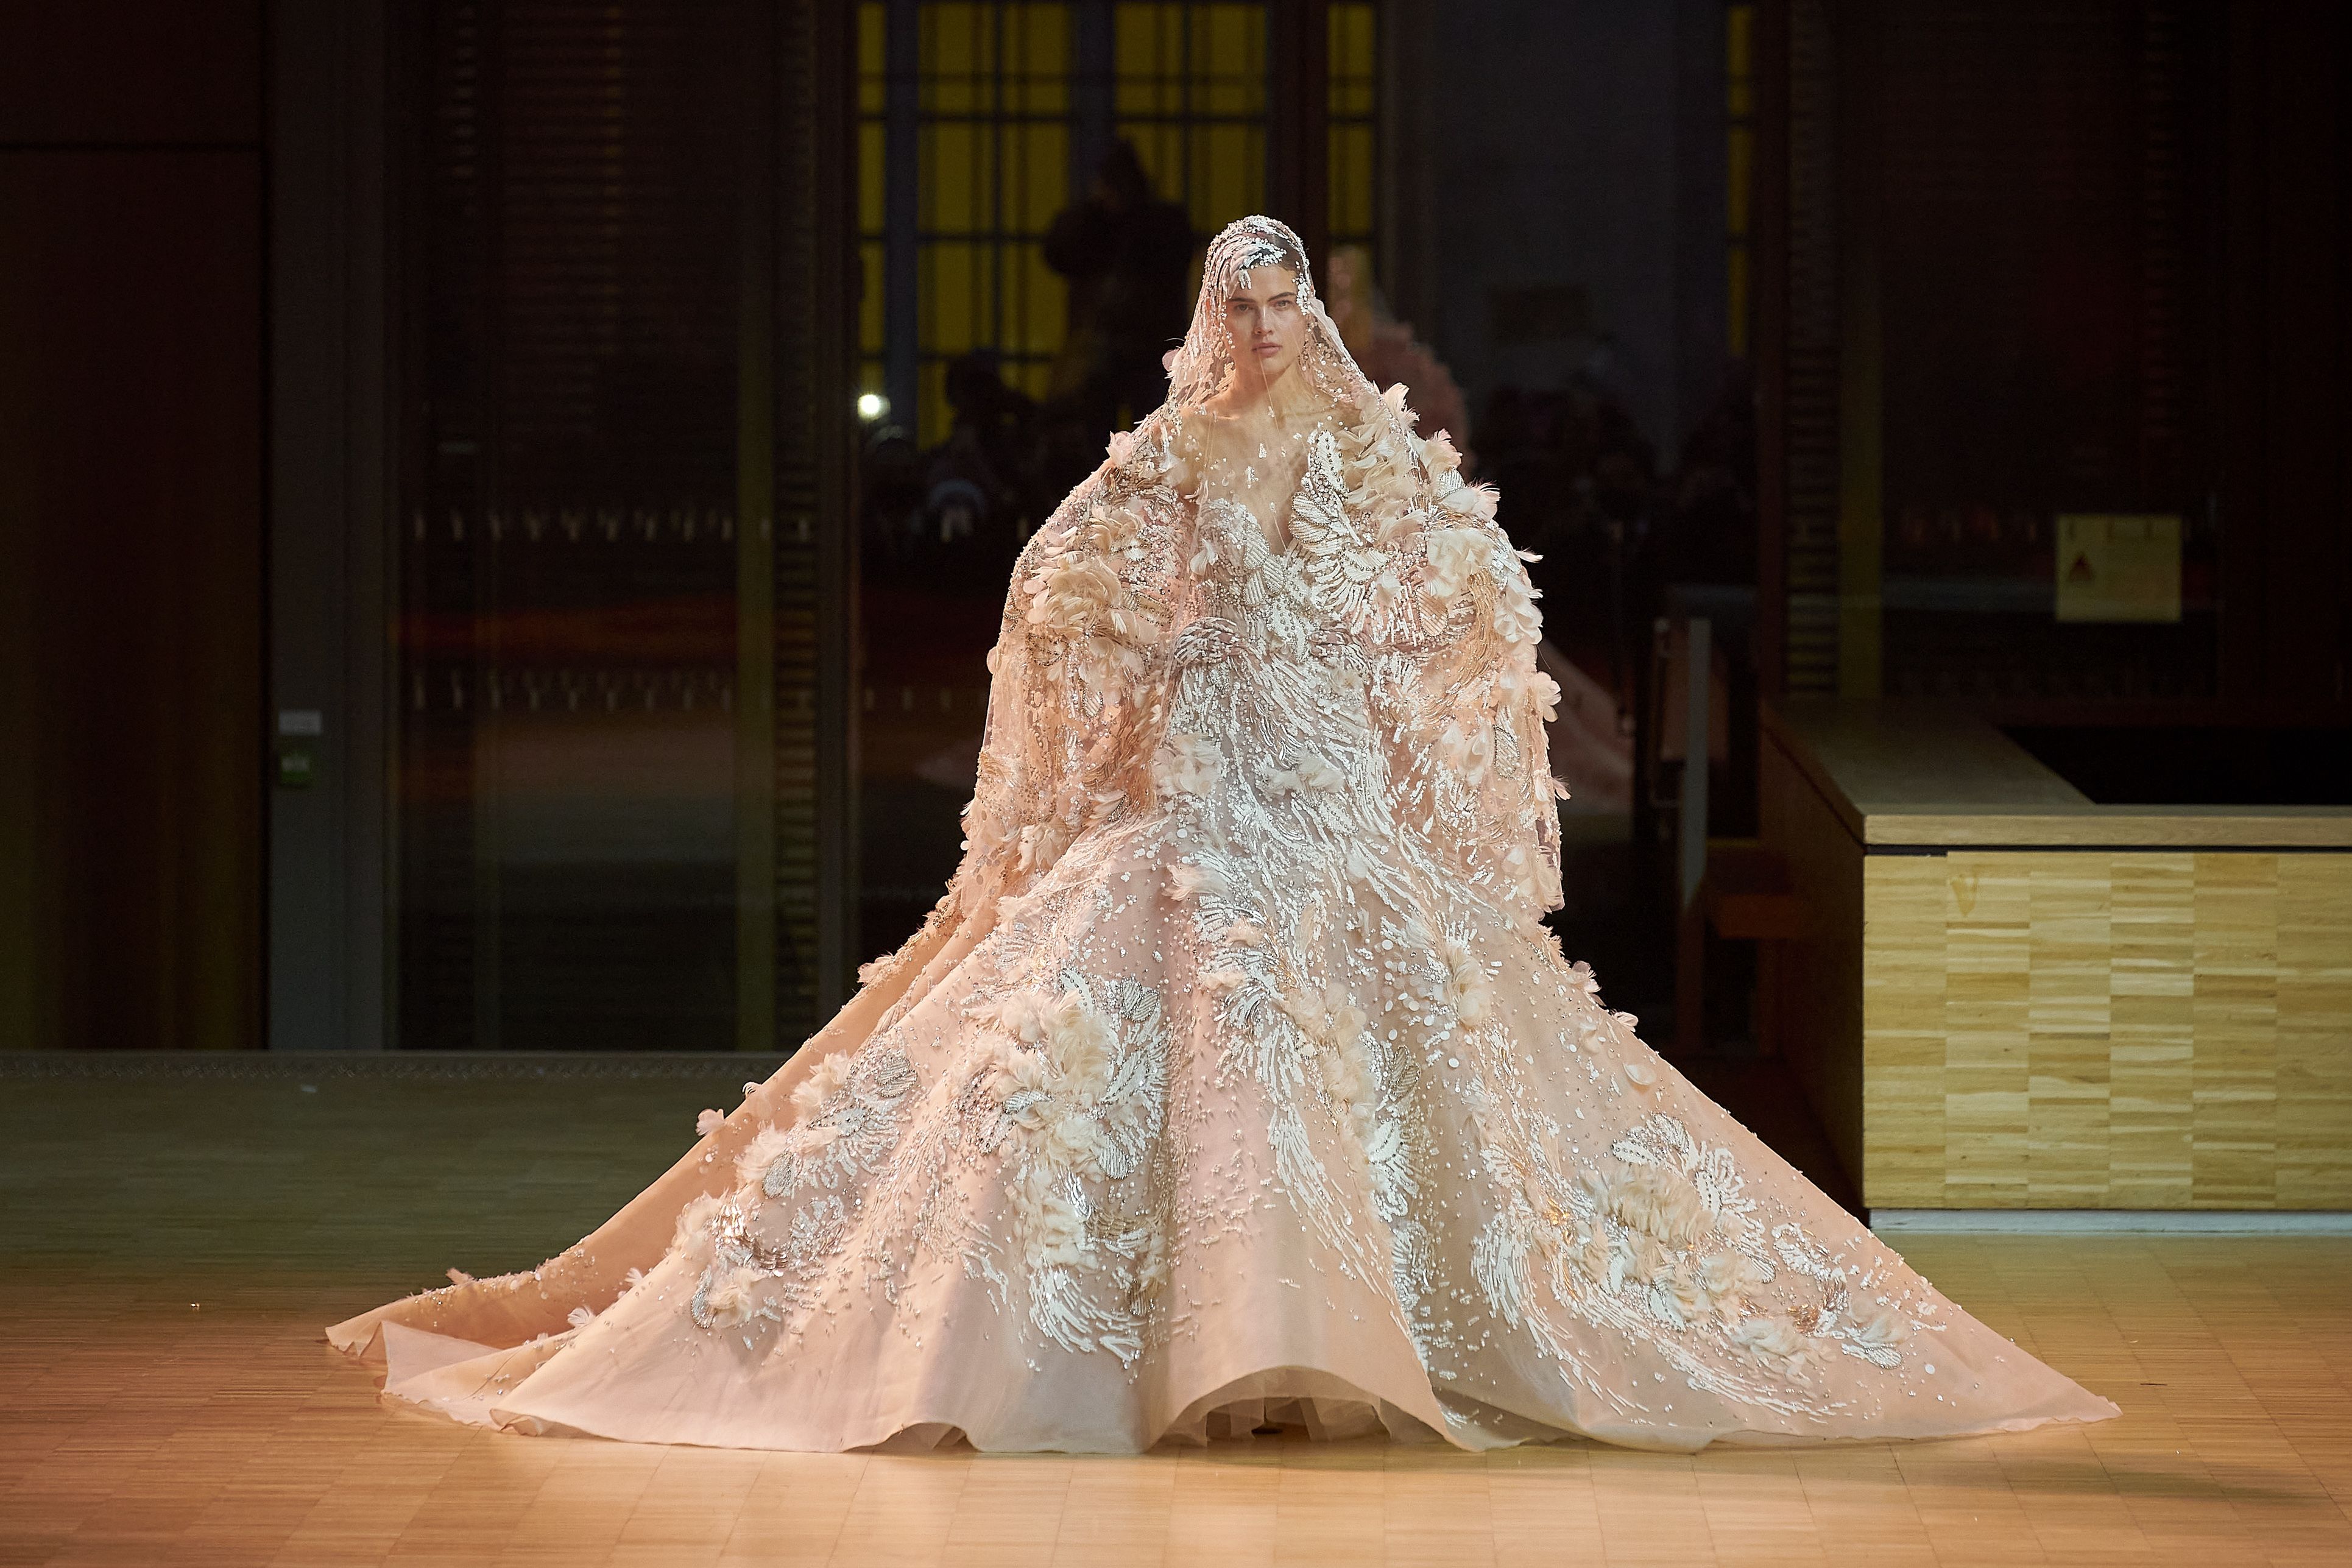 New Elie Saab Bridal Wedding Dresses